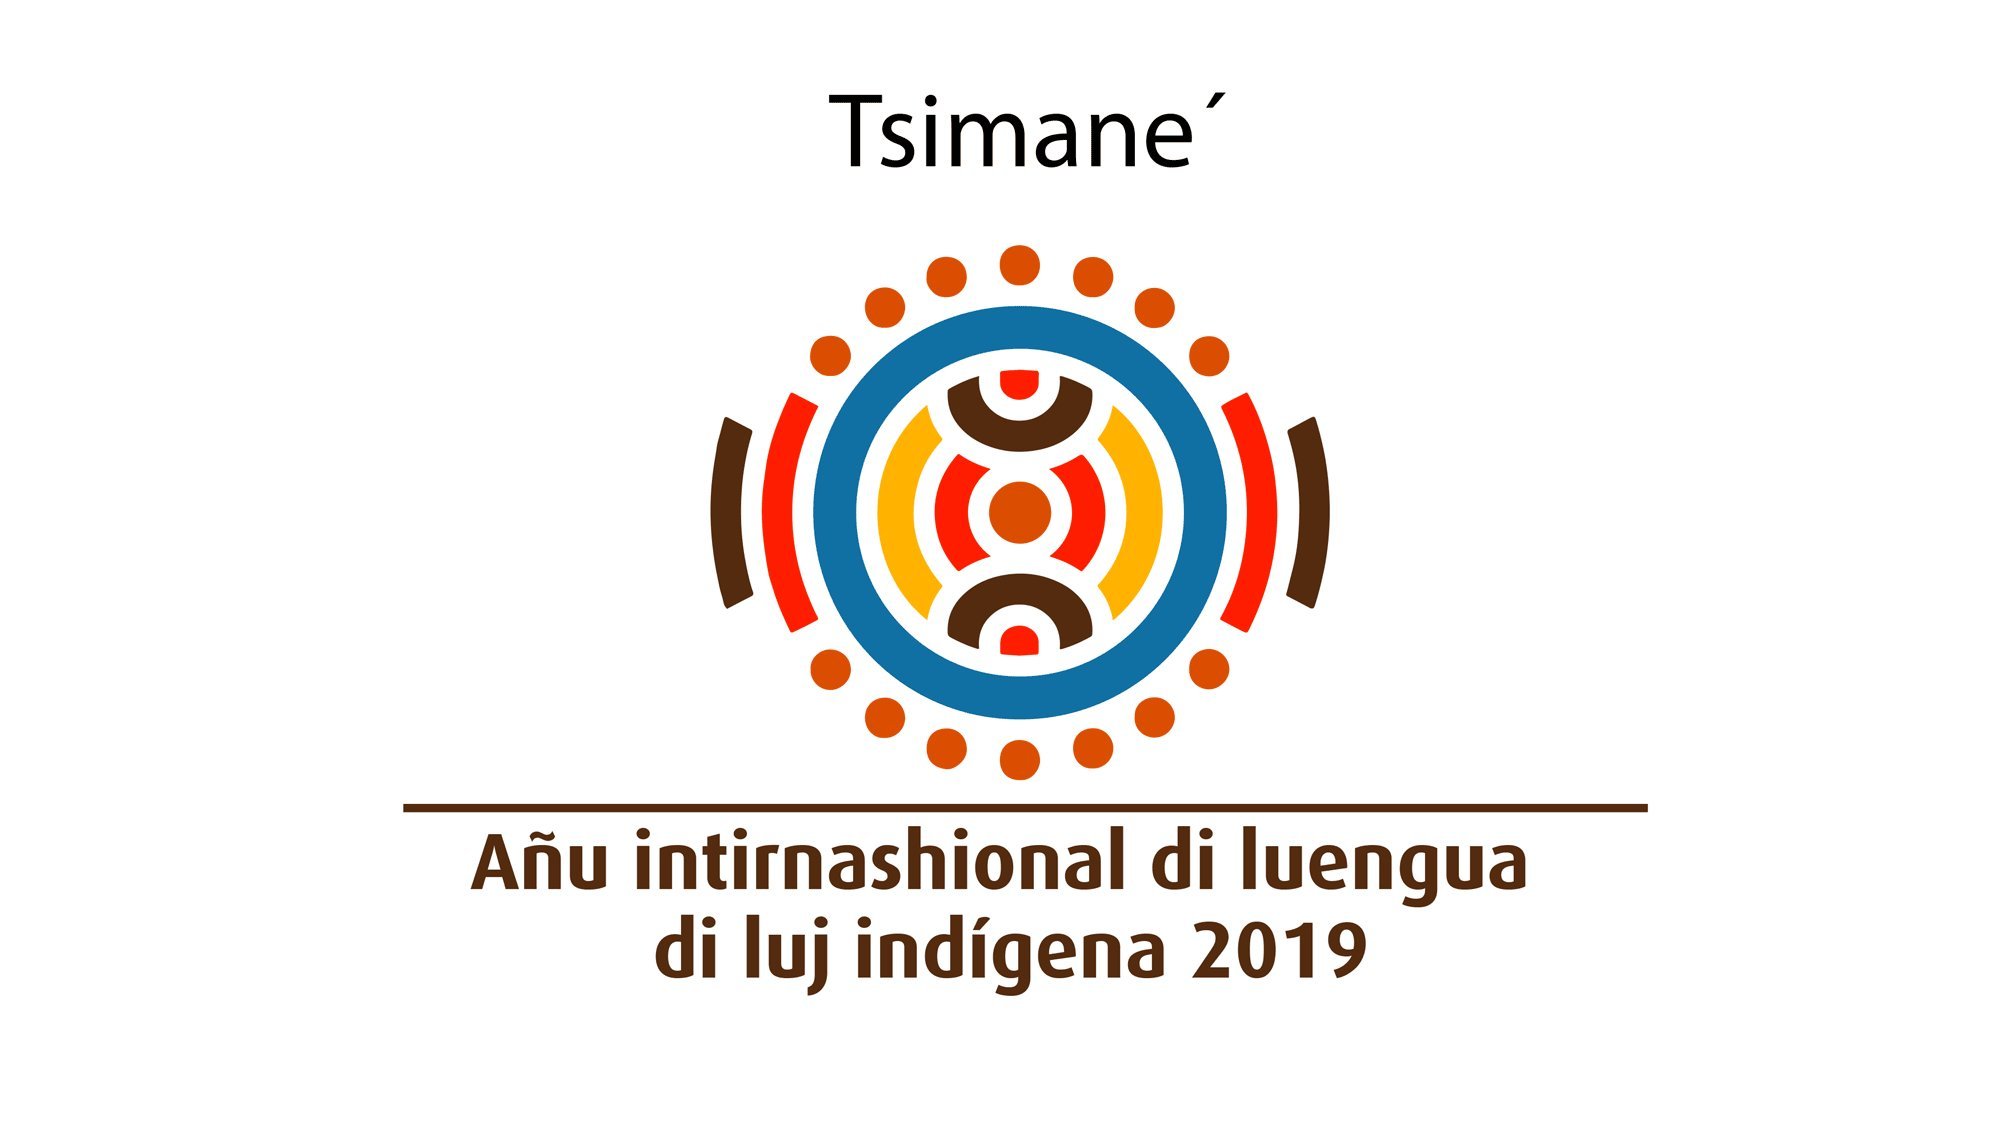 2019 Año Internacional de las Lenguas Indígenas